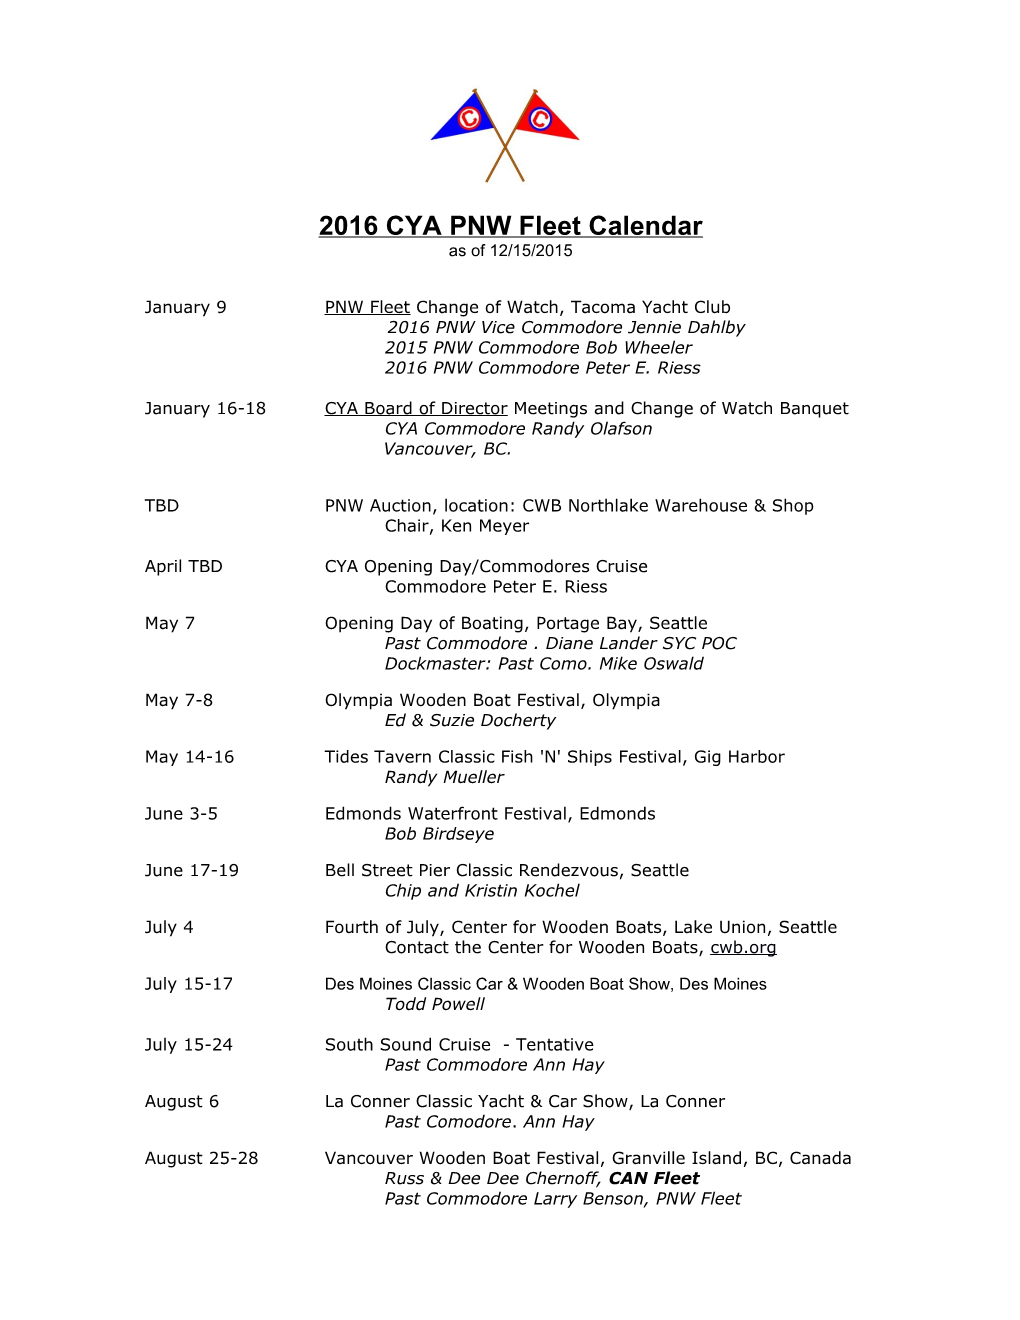 Classic Yacht Association-Pnw-Fleet Calendar for 2009